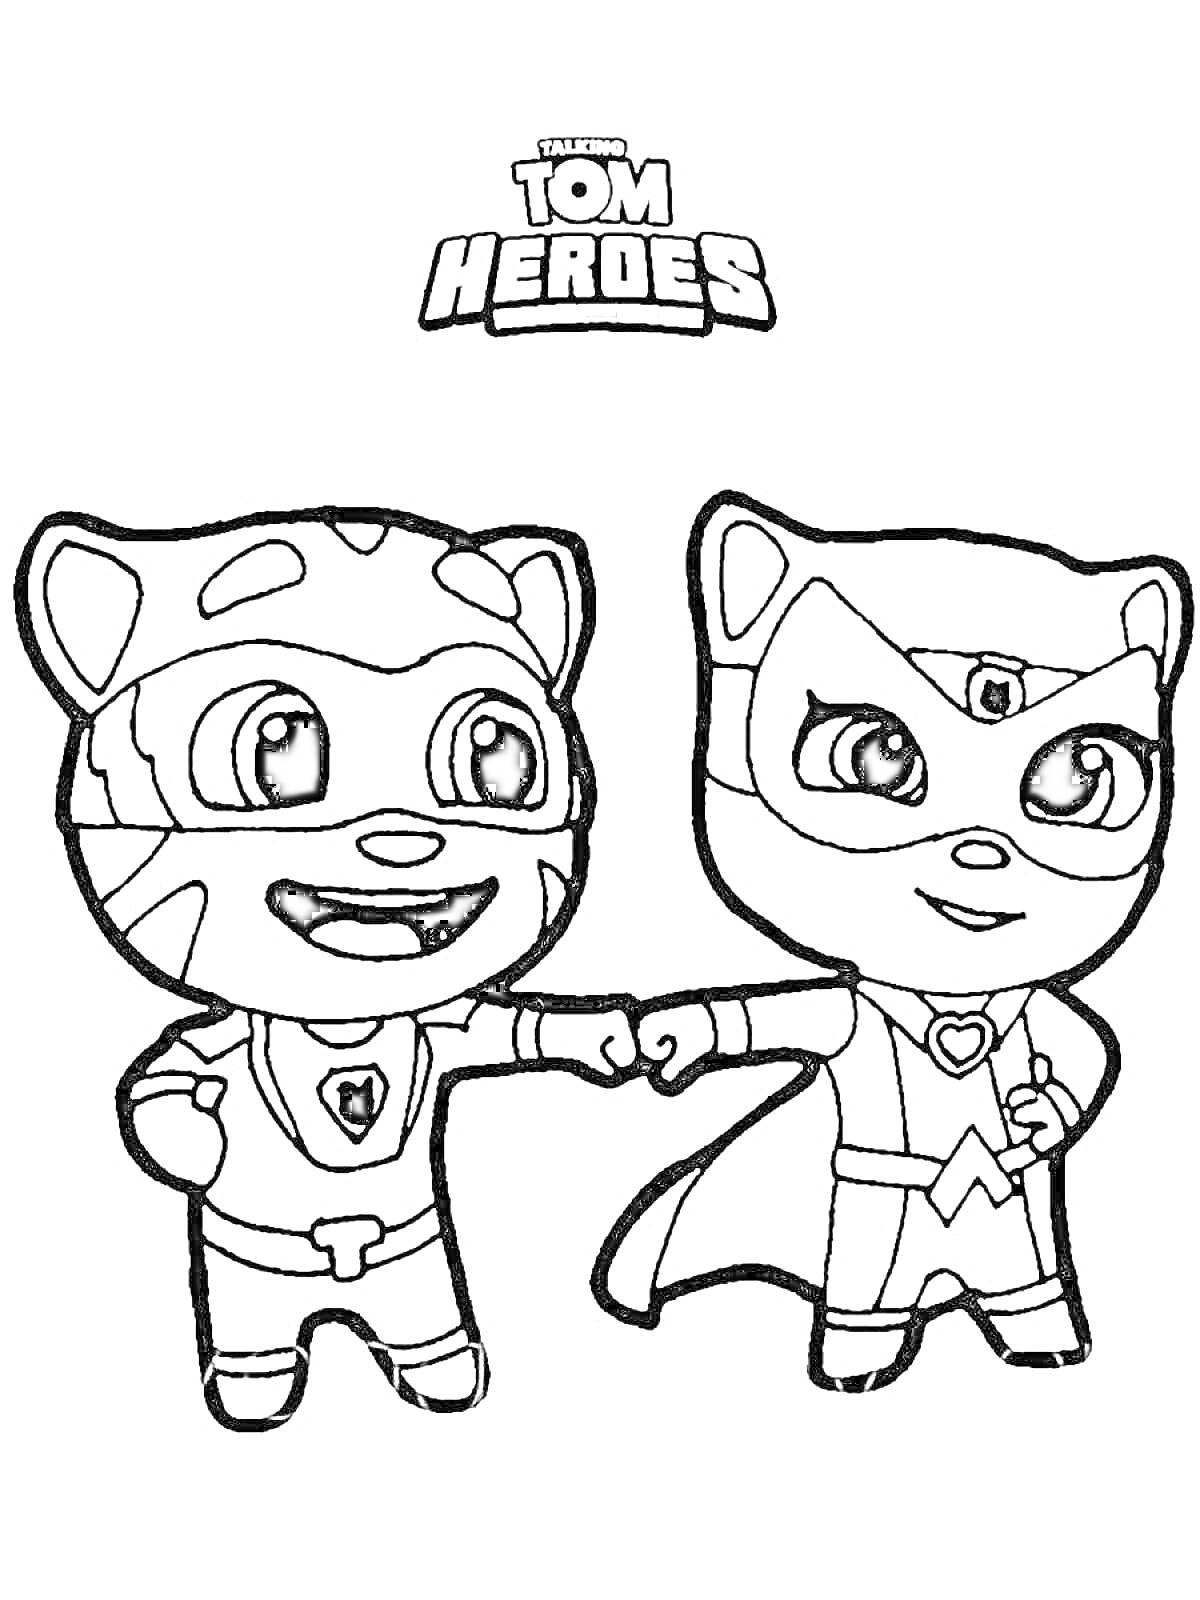 Раскраска Говорящий Том и друзья в костюмах супергероев, держат друг друга за руки